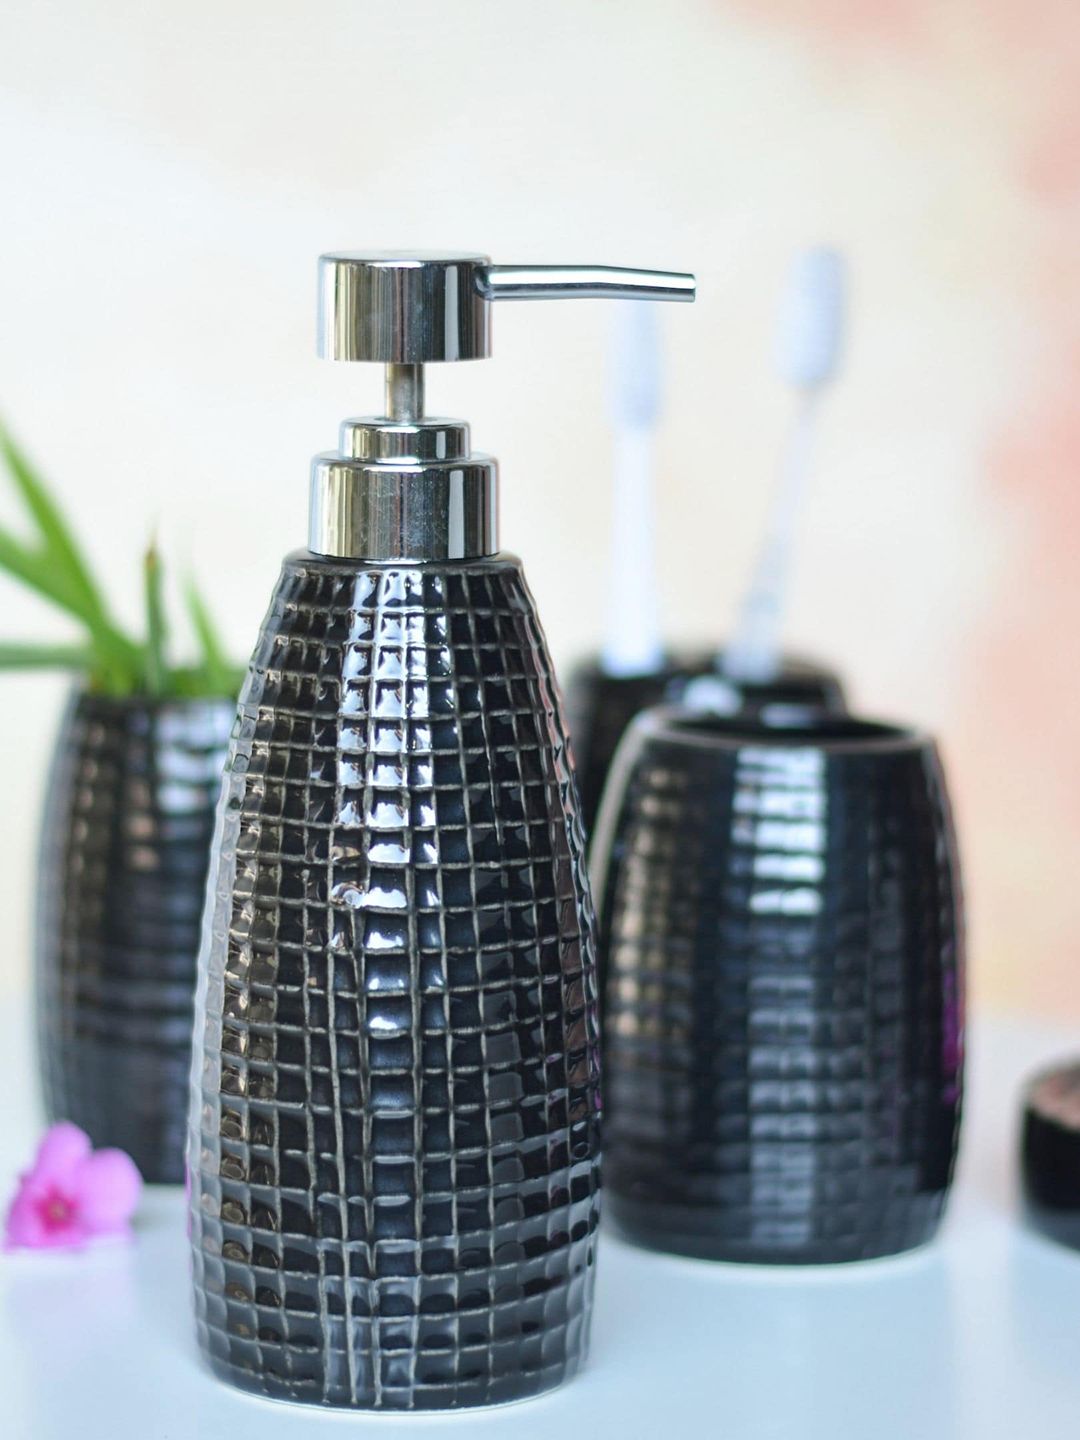 Nestasia 5 Pieces Black Textured Ceramic Bathroom Accessories Set Price in India